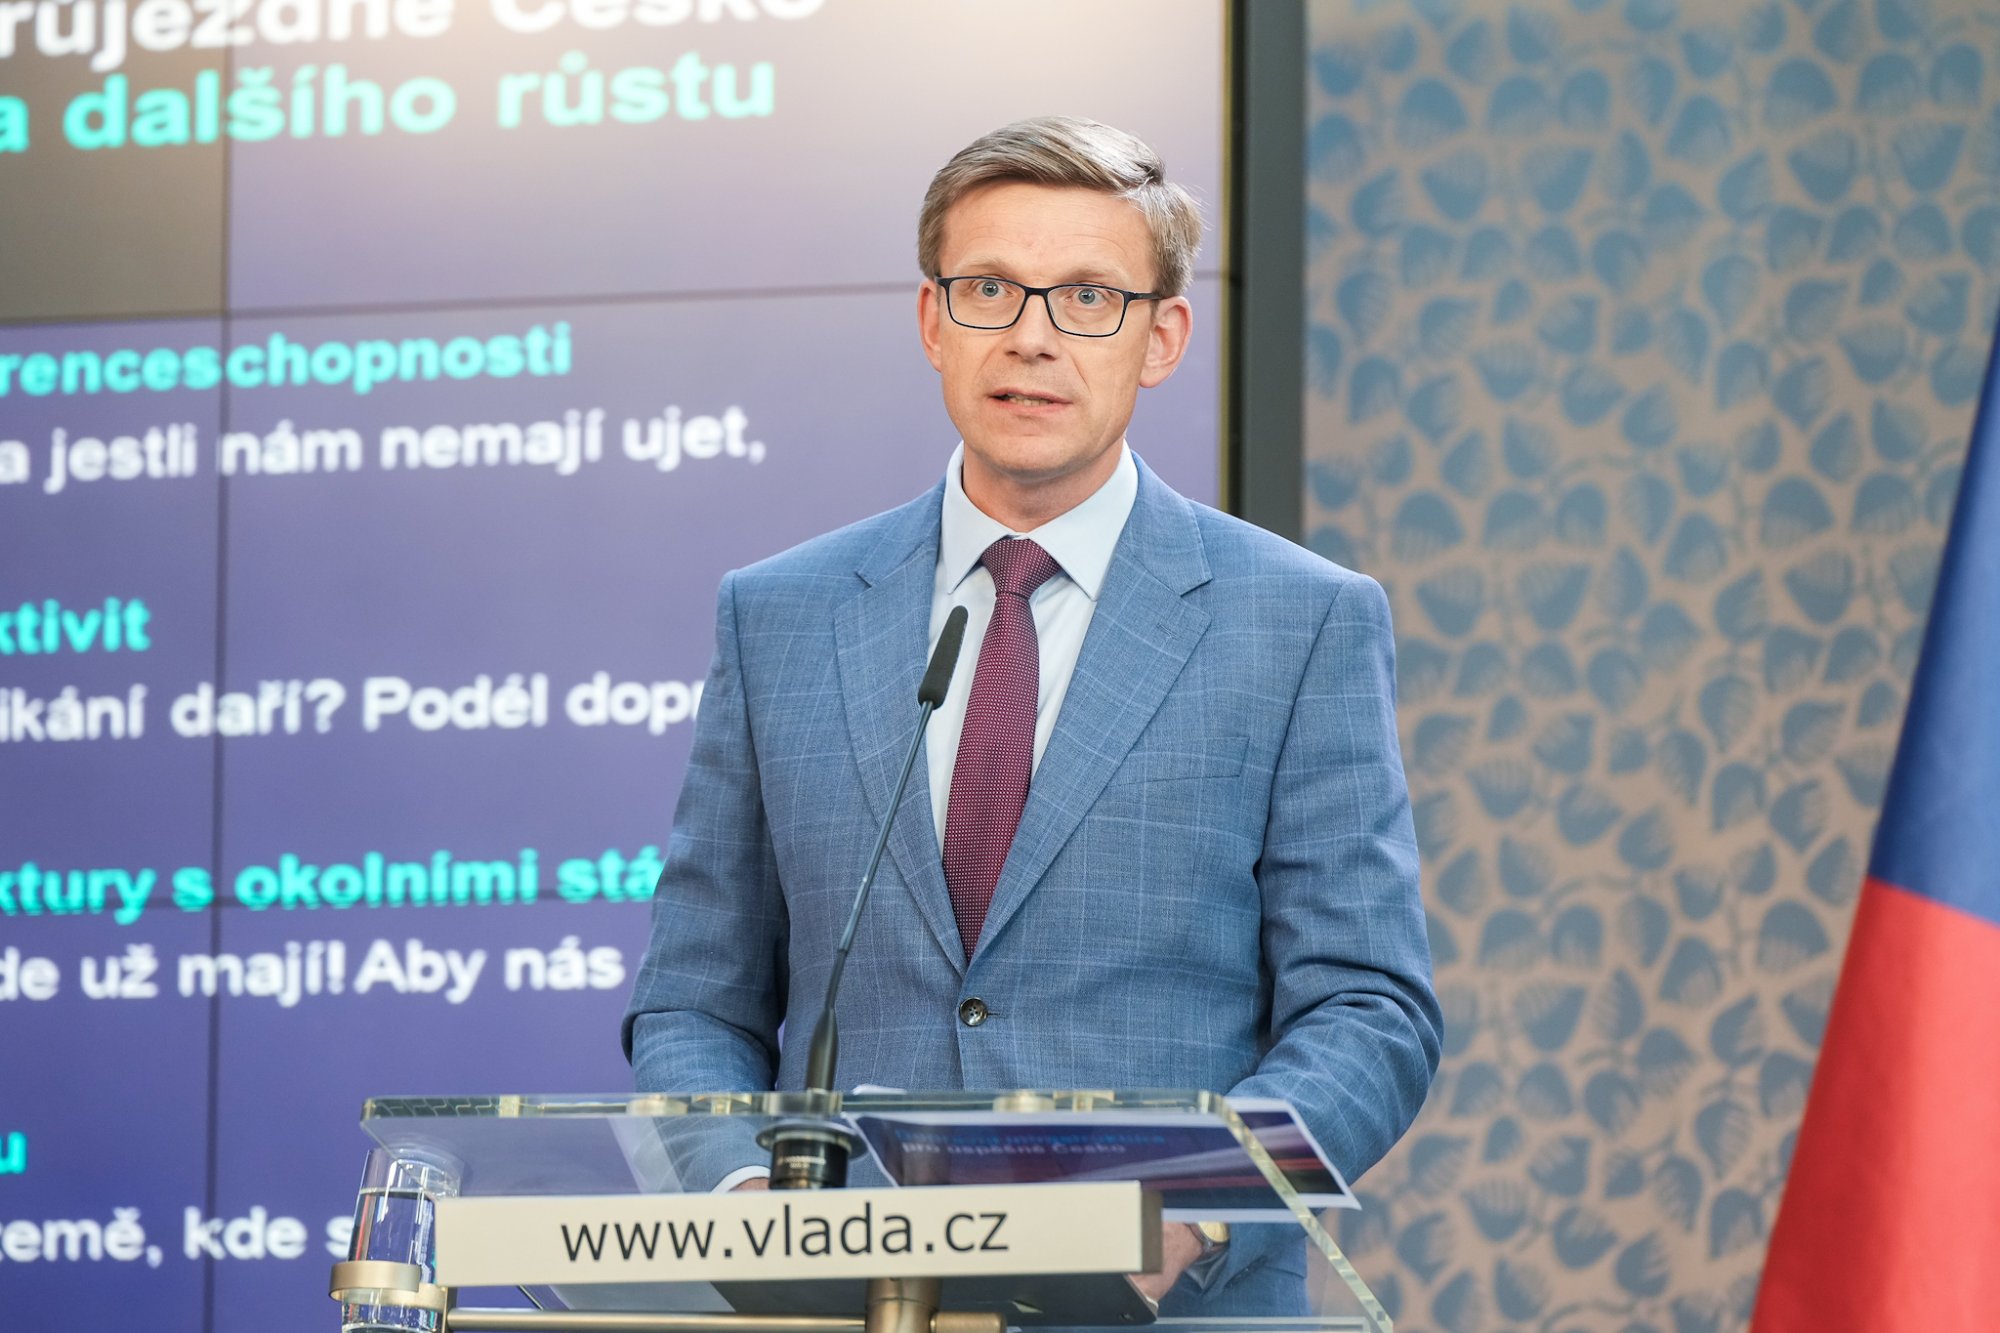 ČRo: Do úpravy železničních přejezdů půjde 1,8 miliardy korun